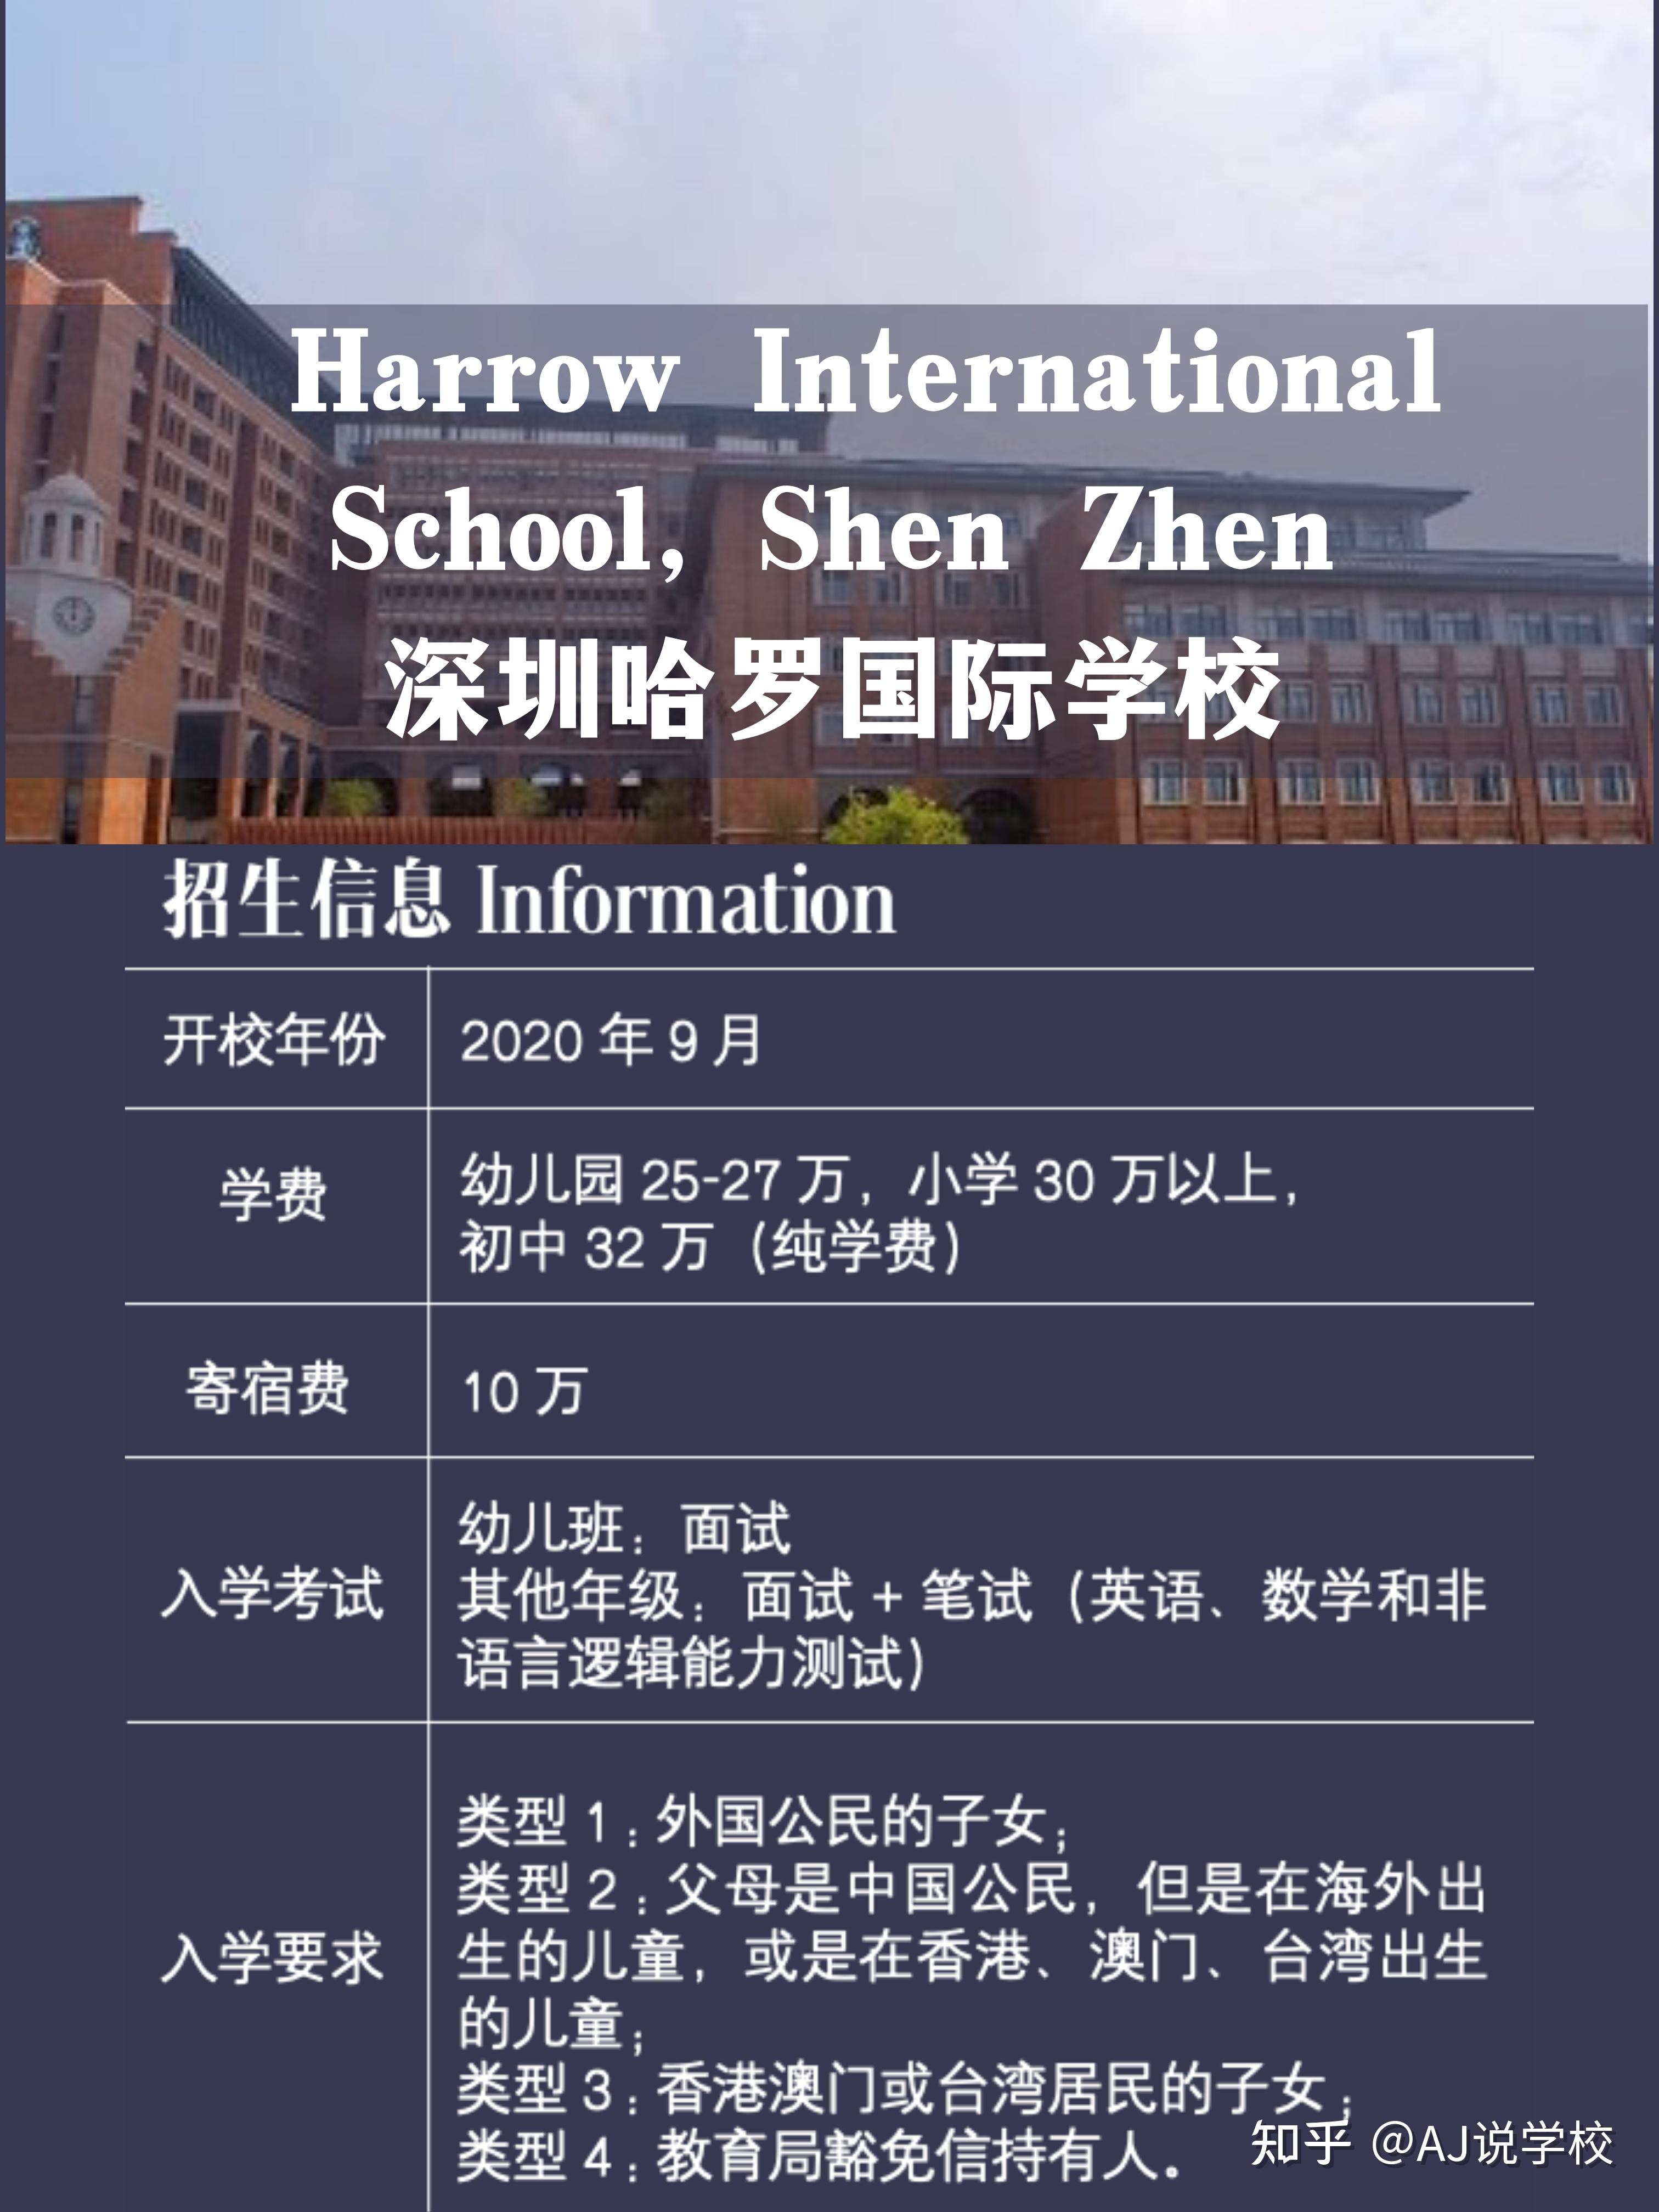 一,深圳哈罗国际学校